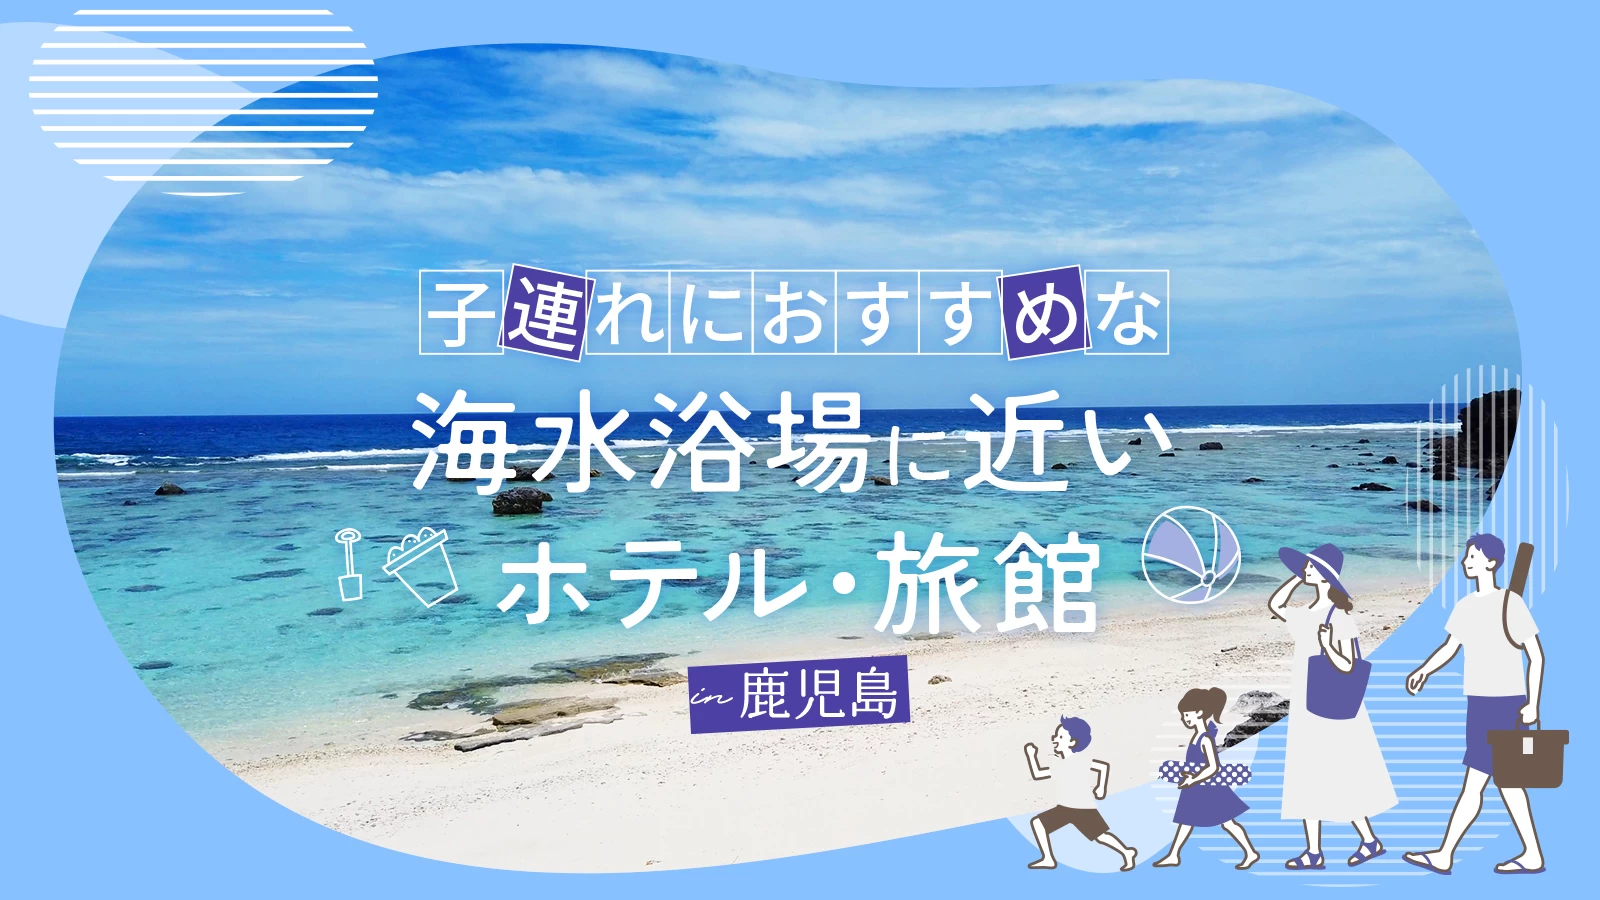 【鹿児島】子連れにおすすめな海水浴場に近いホテル・旅館5選